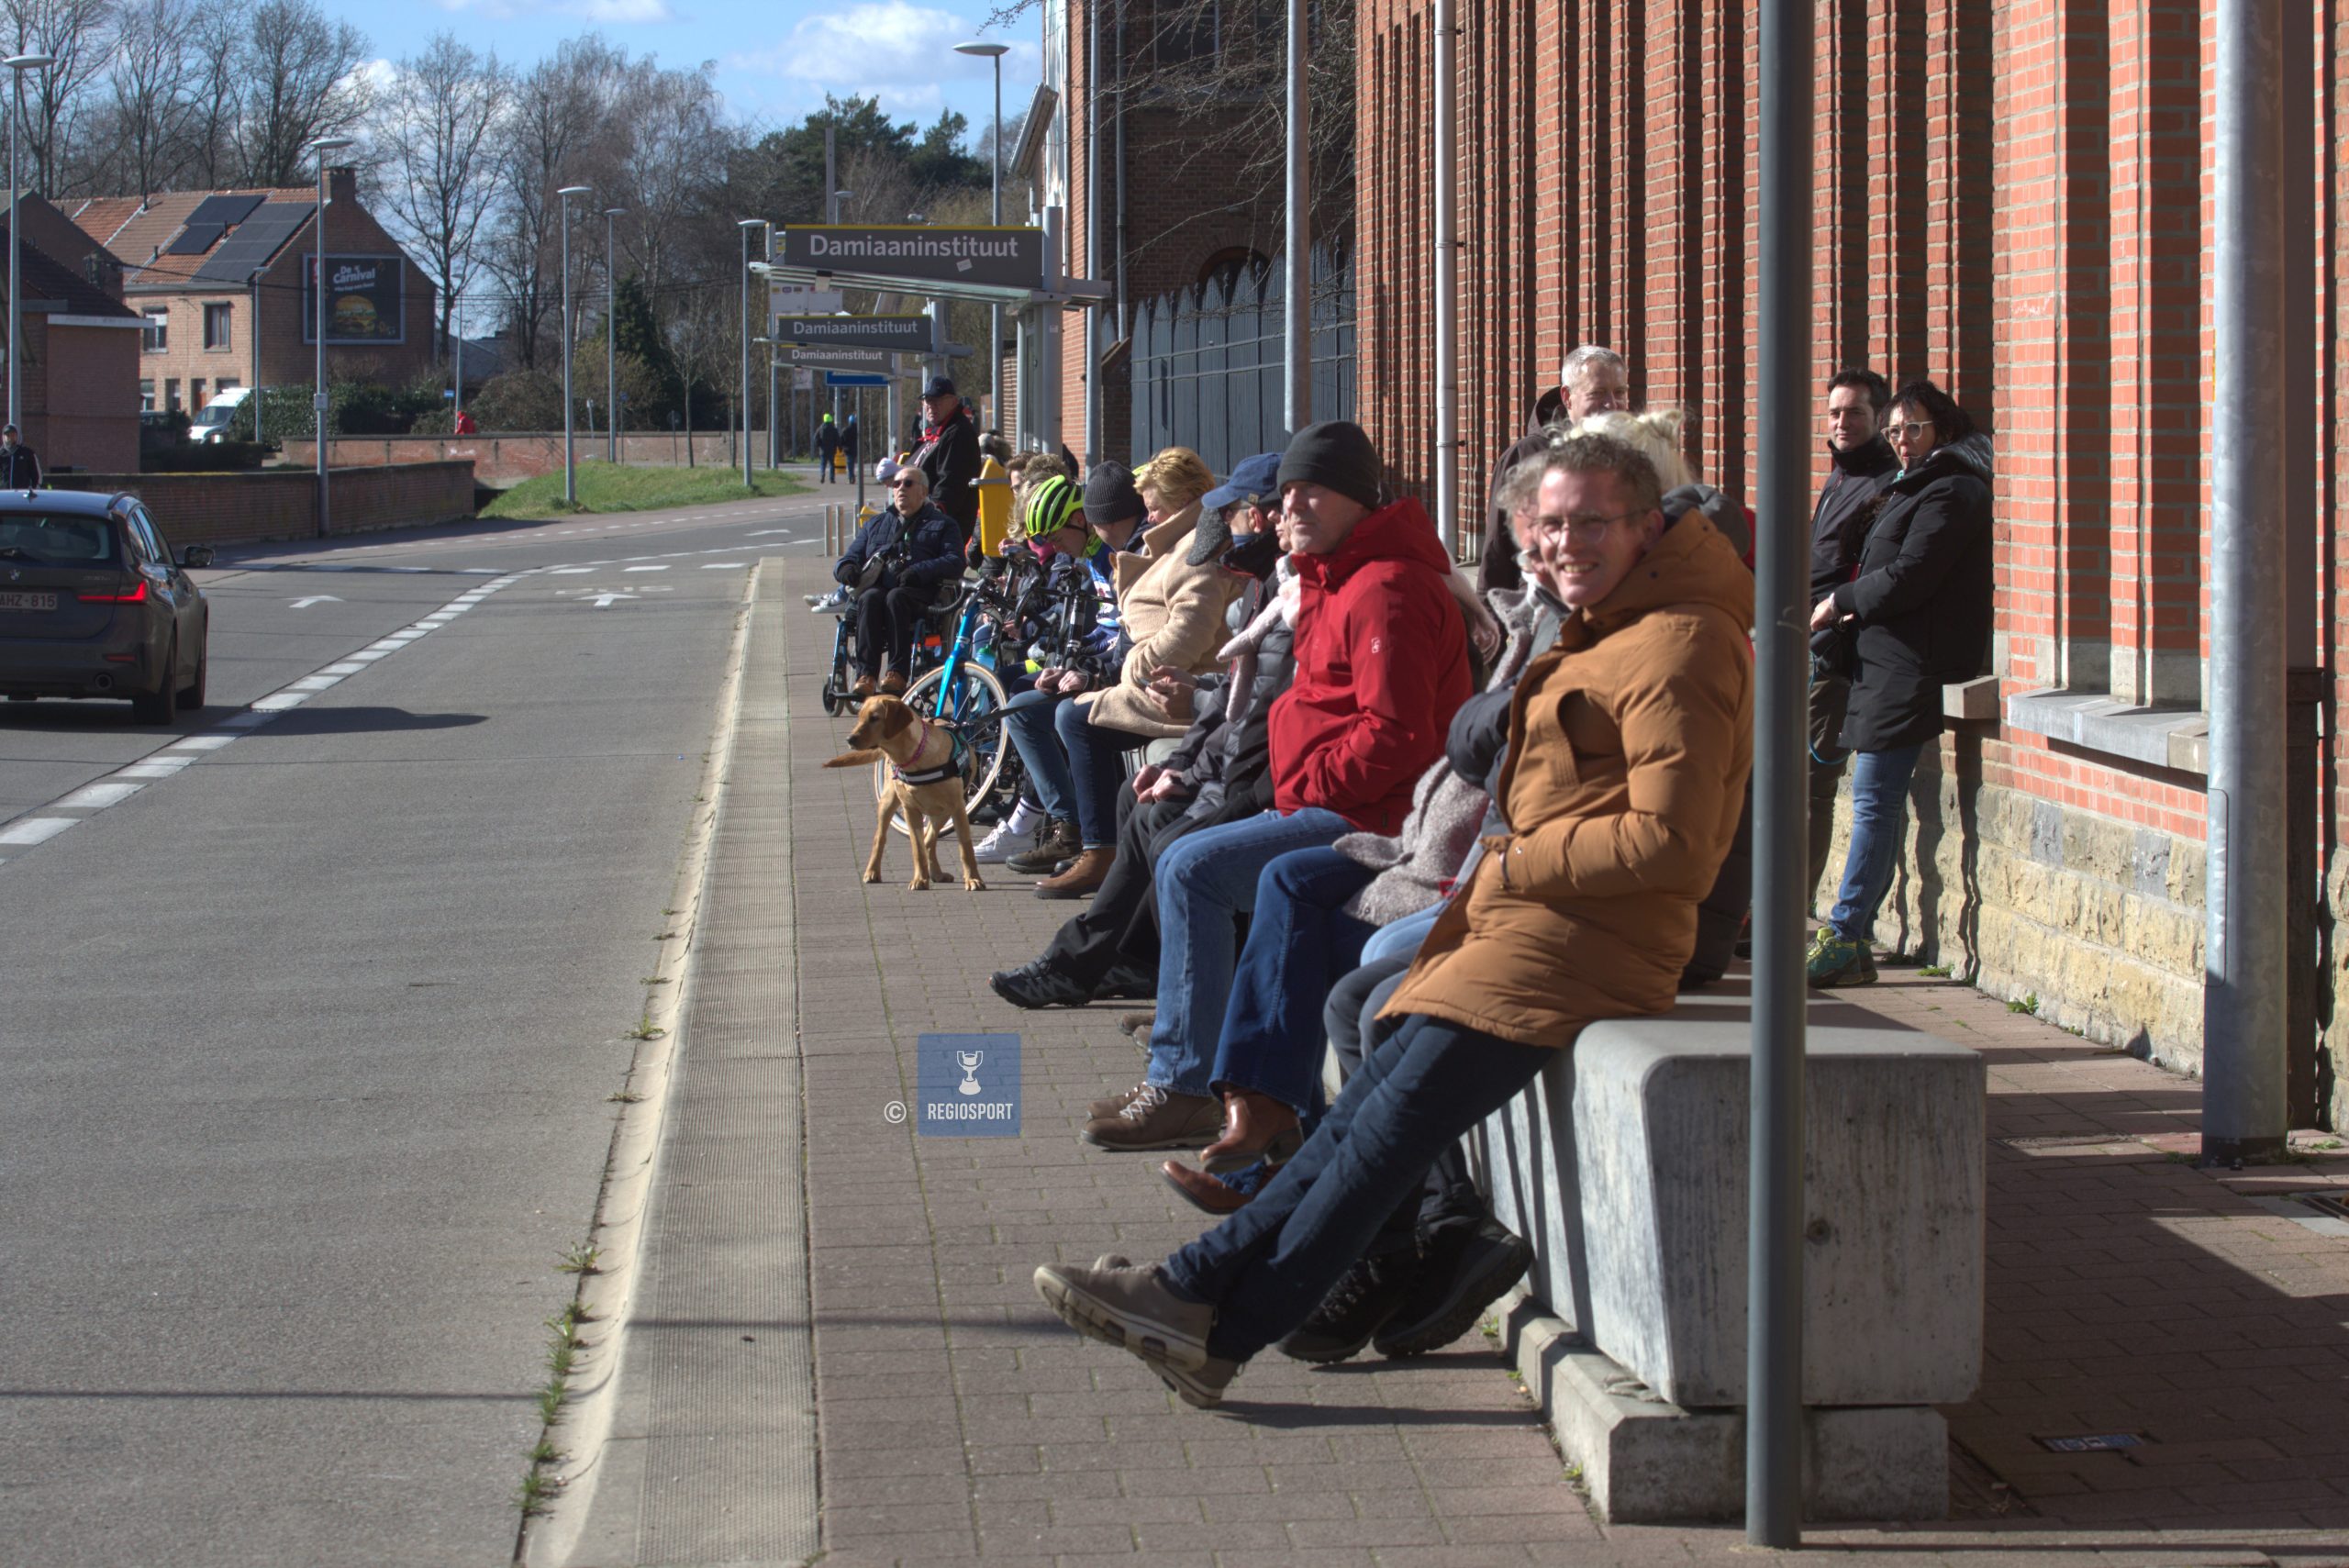 De fans wachten op de rensters aan het Damiaaninstituut Omloop van het Hageland Aarschot